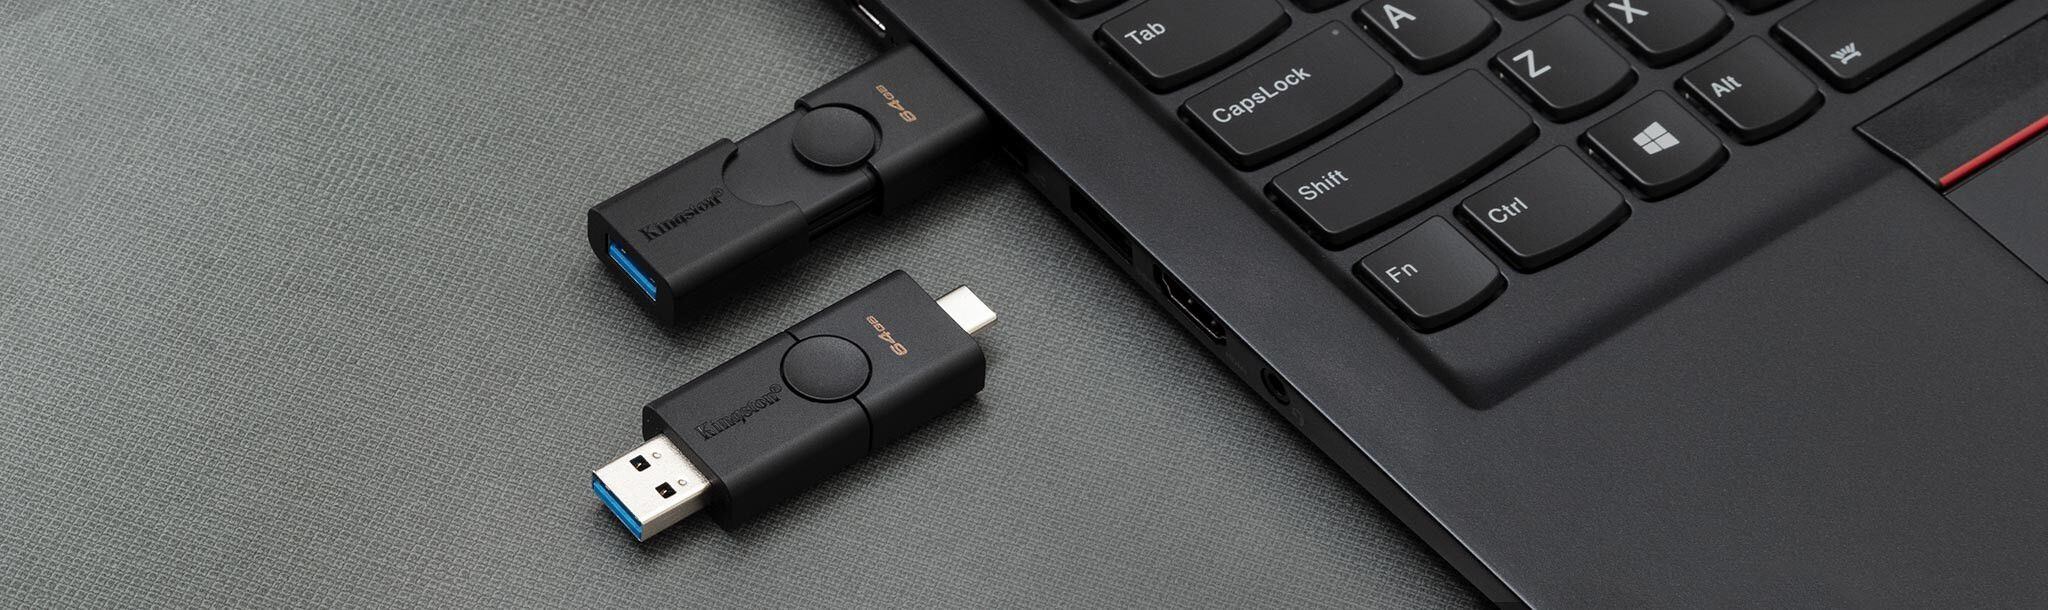 Qué hacer con las USB viejas